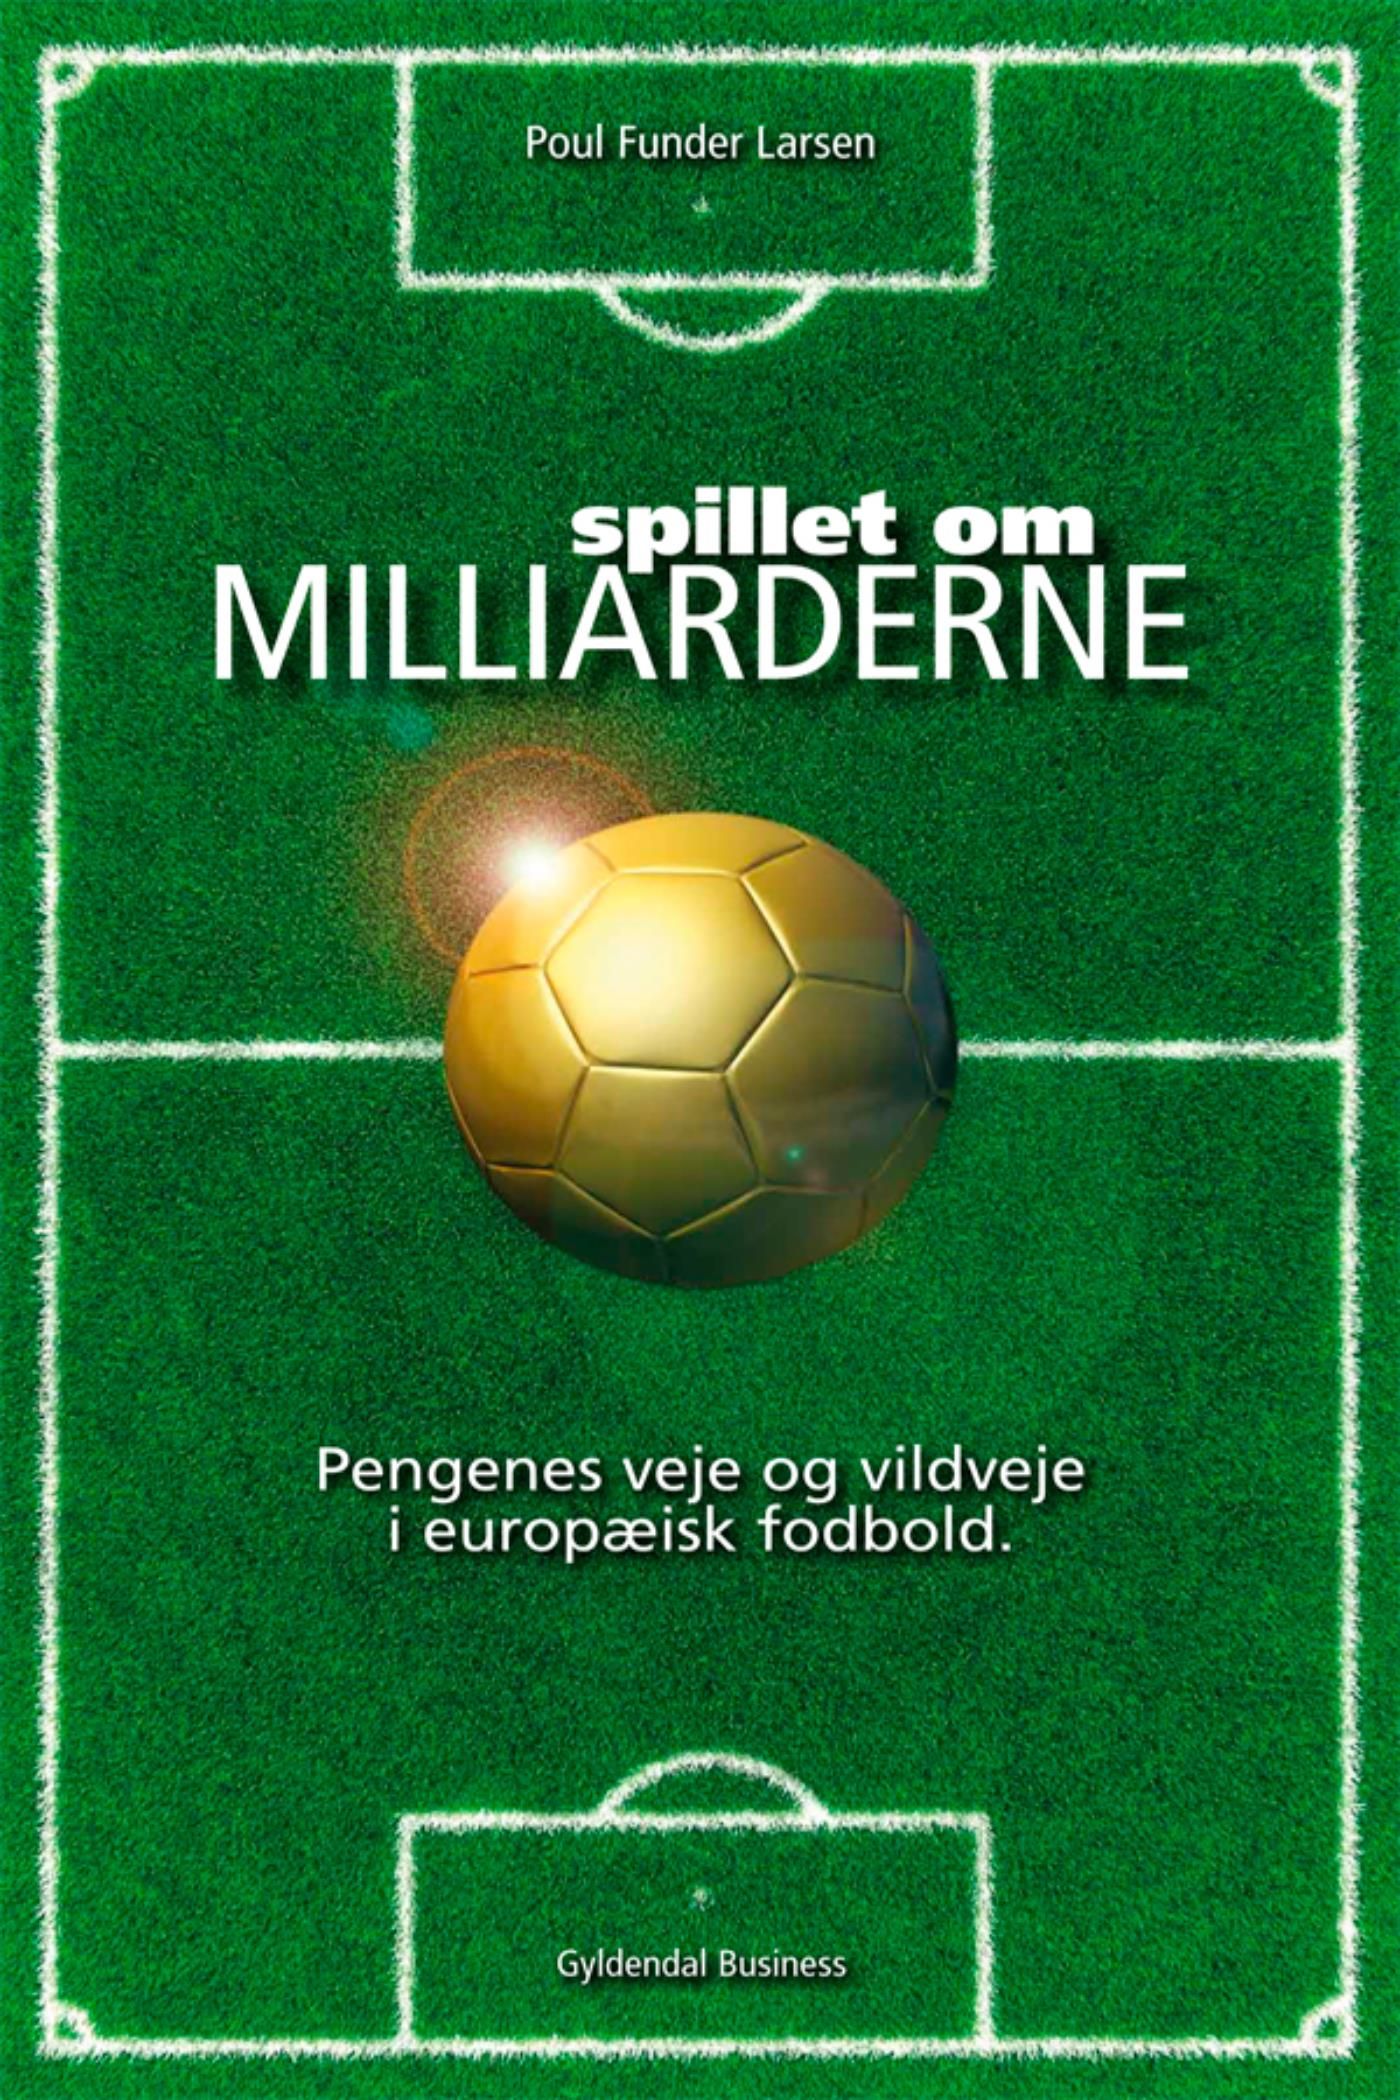 Spillet om milliarderne, e-bok av Poul Funder Larsen